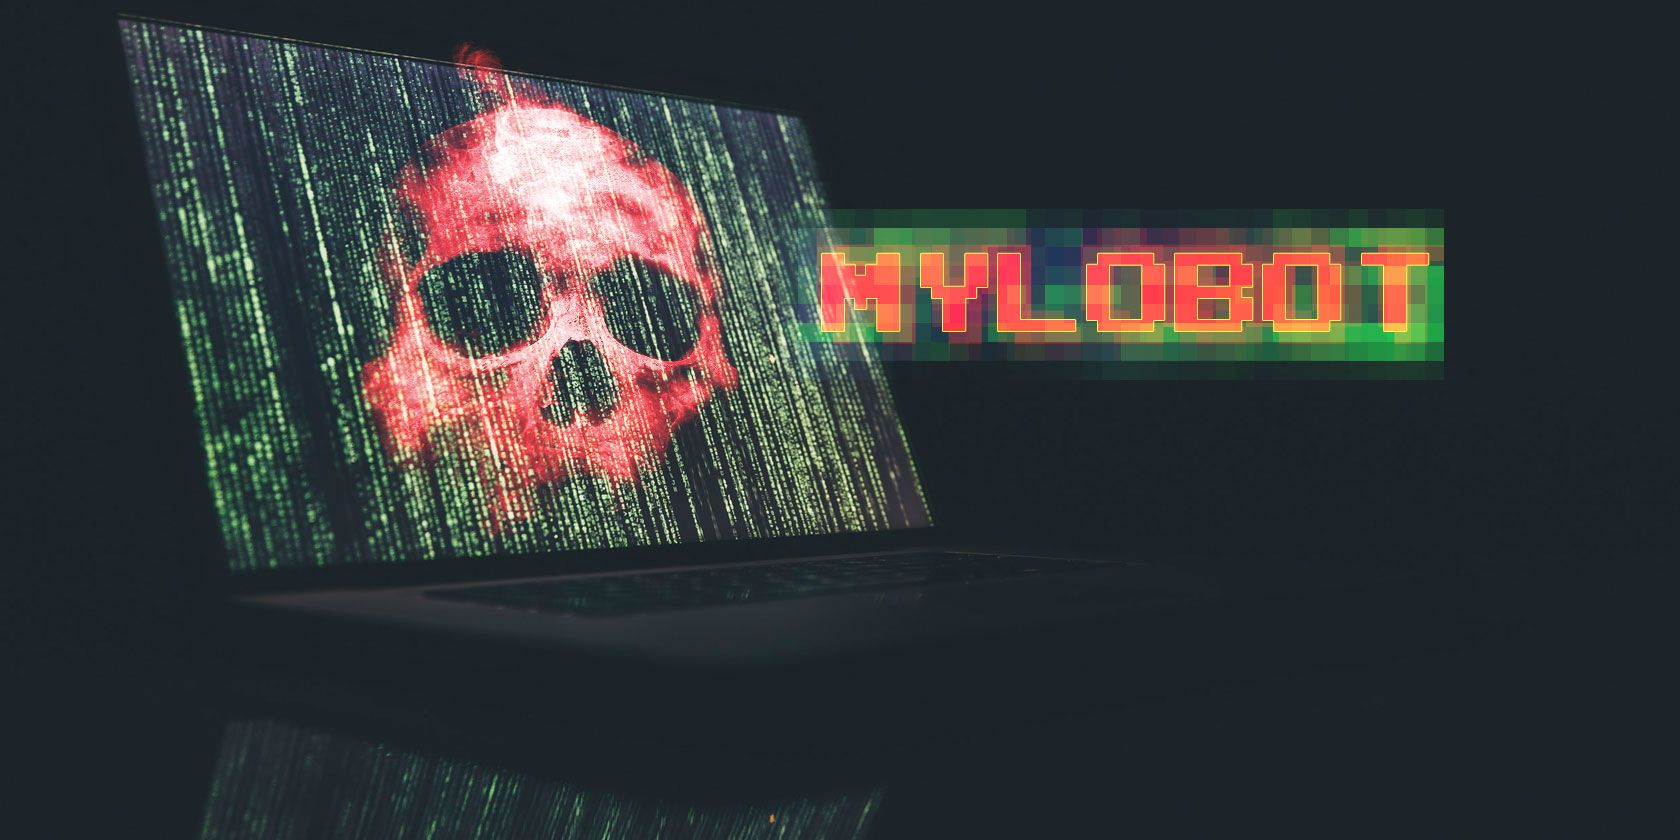 mylobot-malware